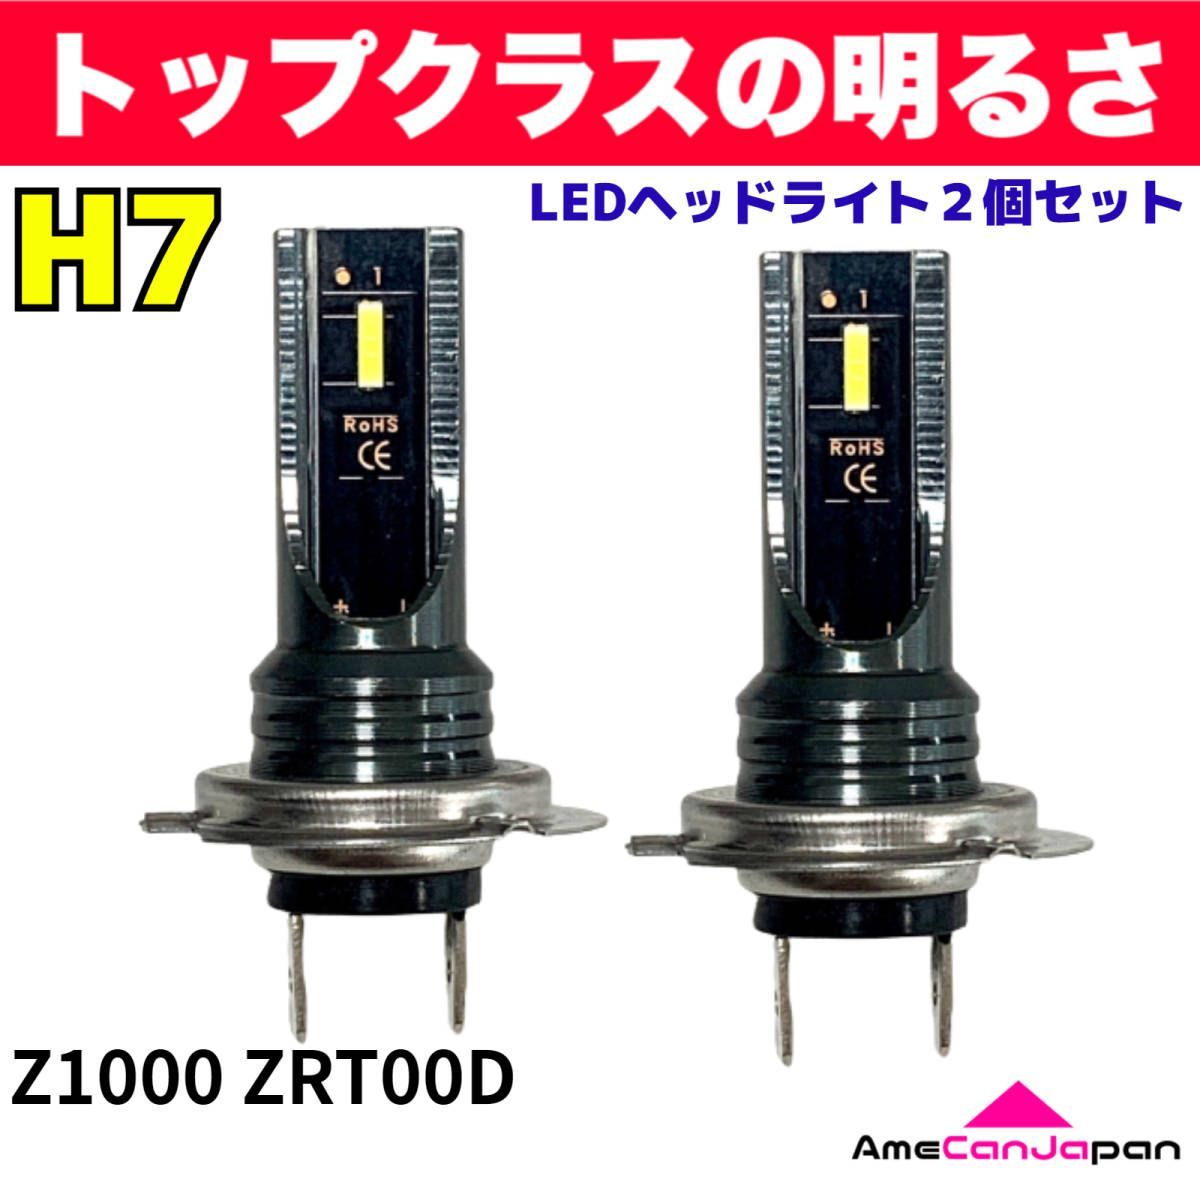 AmeCanJapan KAWASAKI カワサキ Z1000 ZRT00D 適合 H7 LED ヘッドライト バイク用 Hi LOW ホワイト 2灯  爆光 CSPチップ搭載 パーツ バイク用品